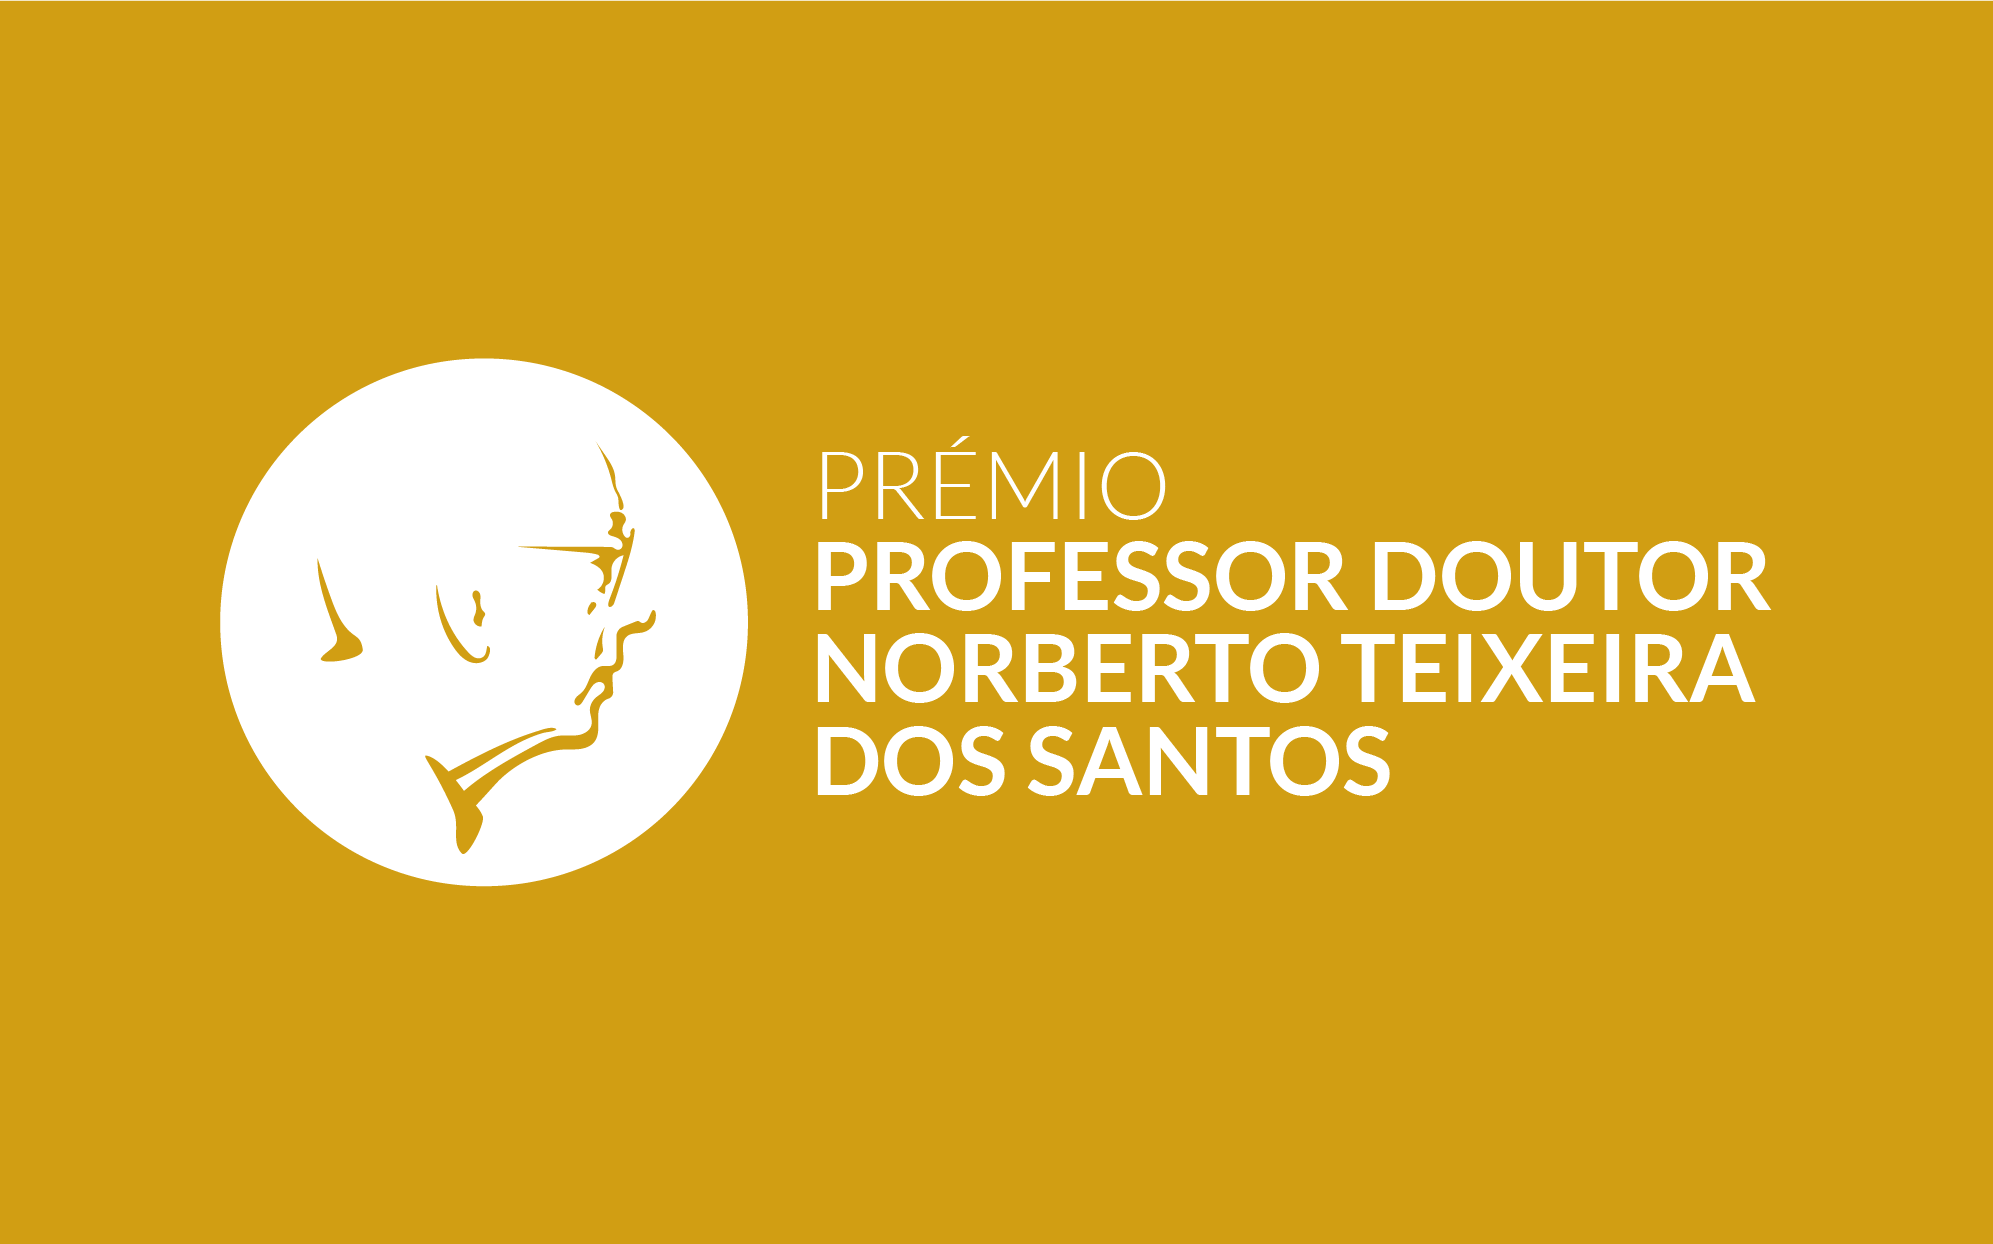 Prémio Professor Doutor Norberto Teixeira dos Santos